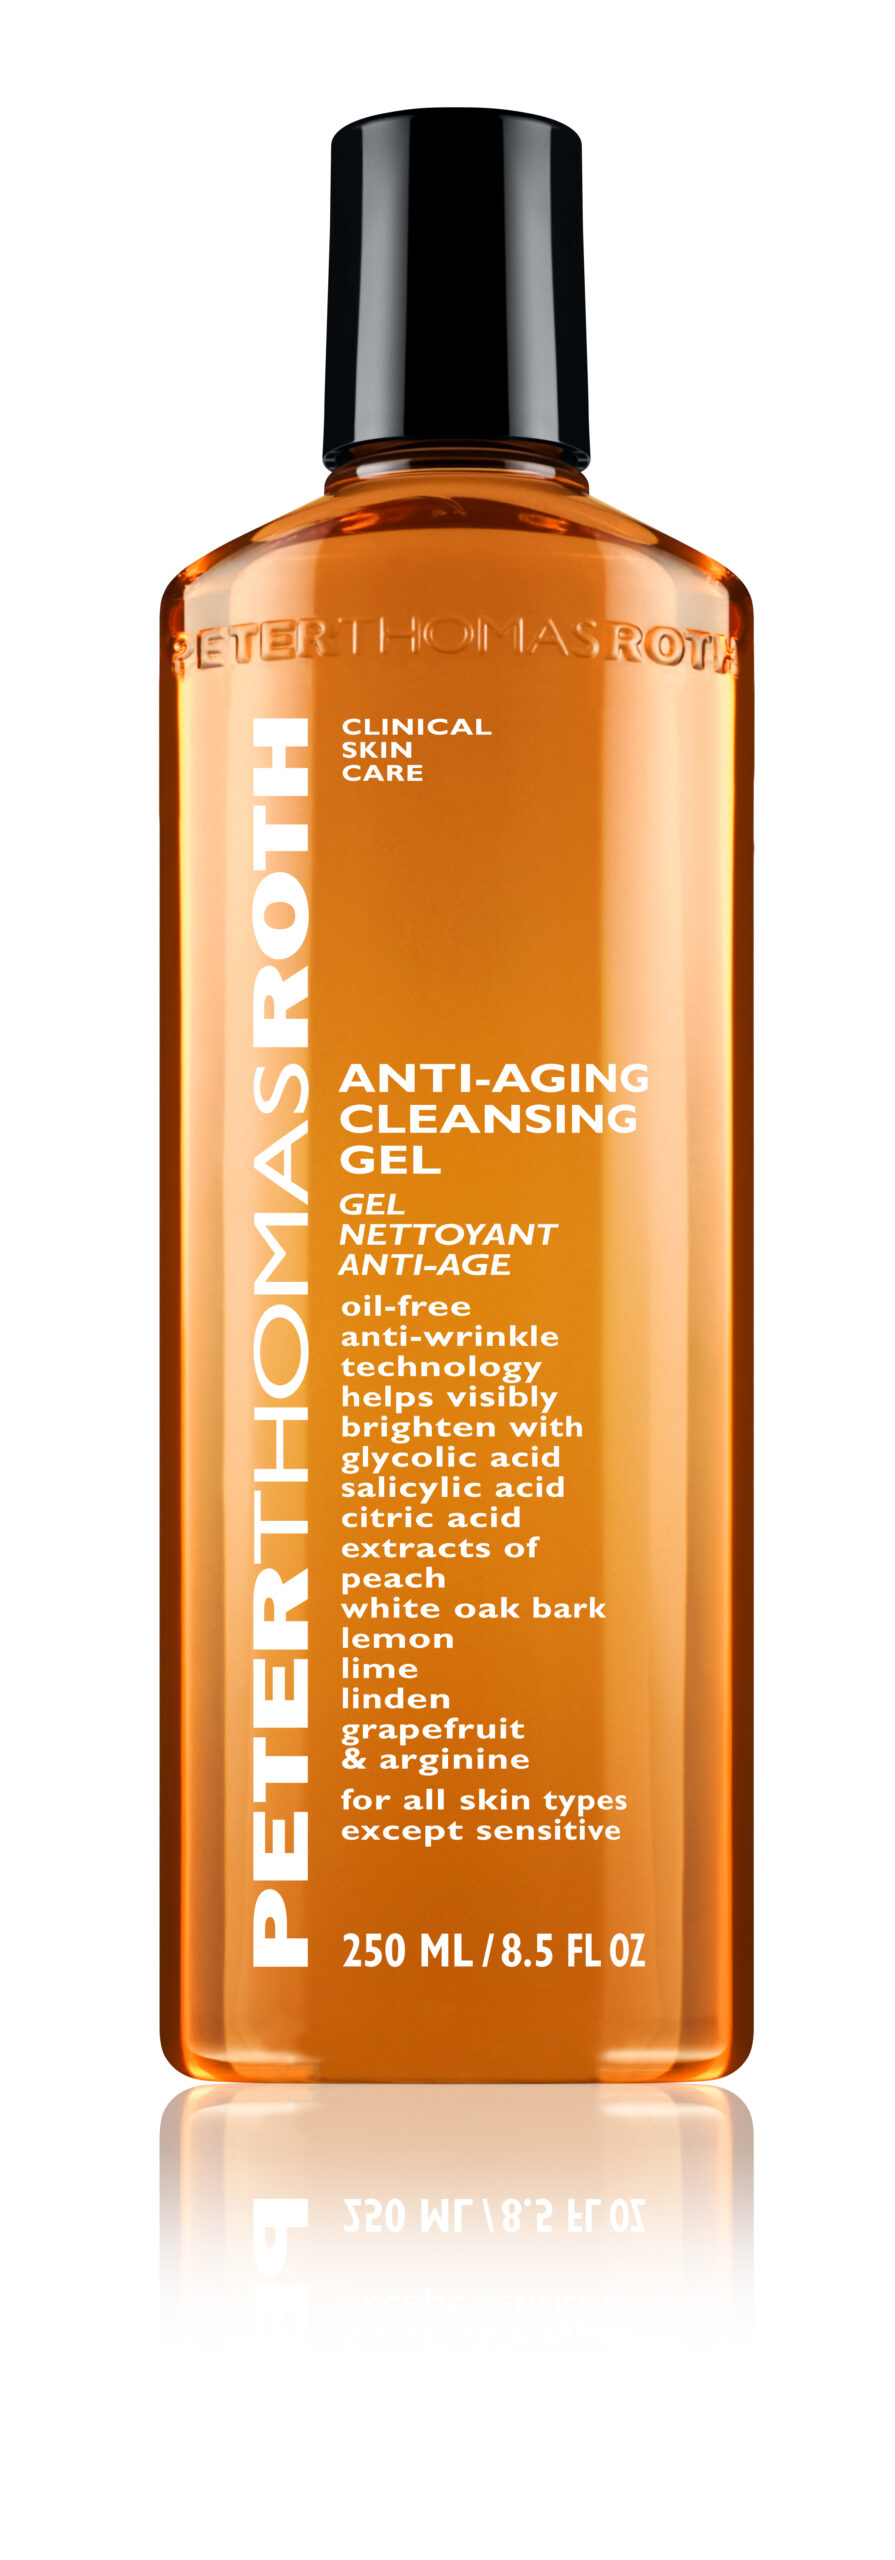 Anti-aging Cleansing Gel